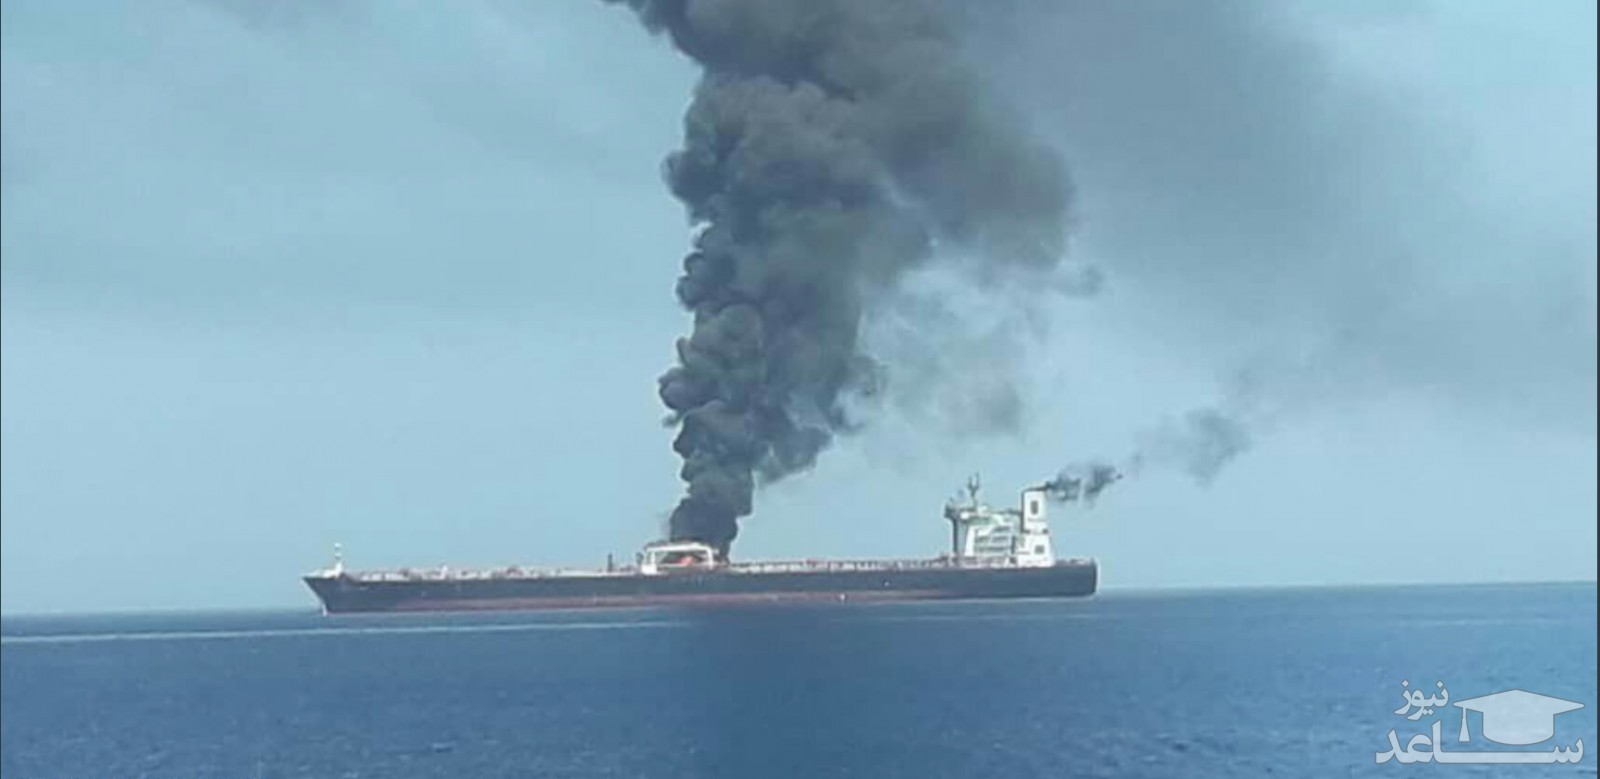 هویت کشتی منفجر شده در بندر جده عربستان مشخص شد